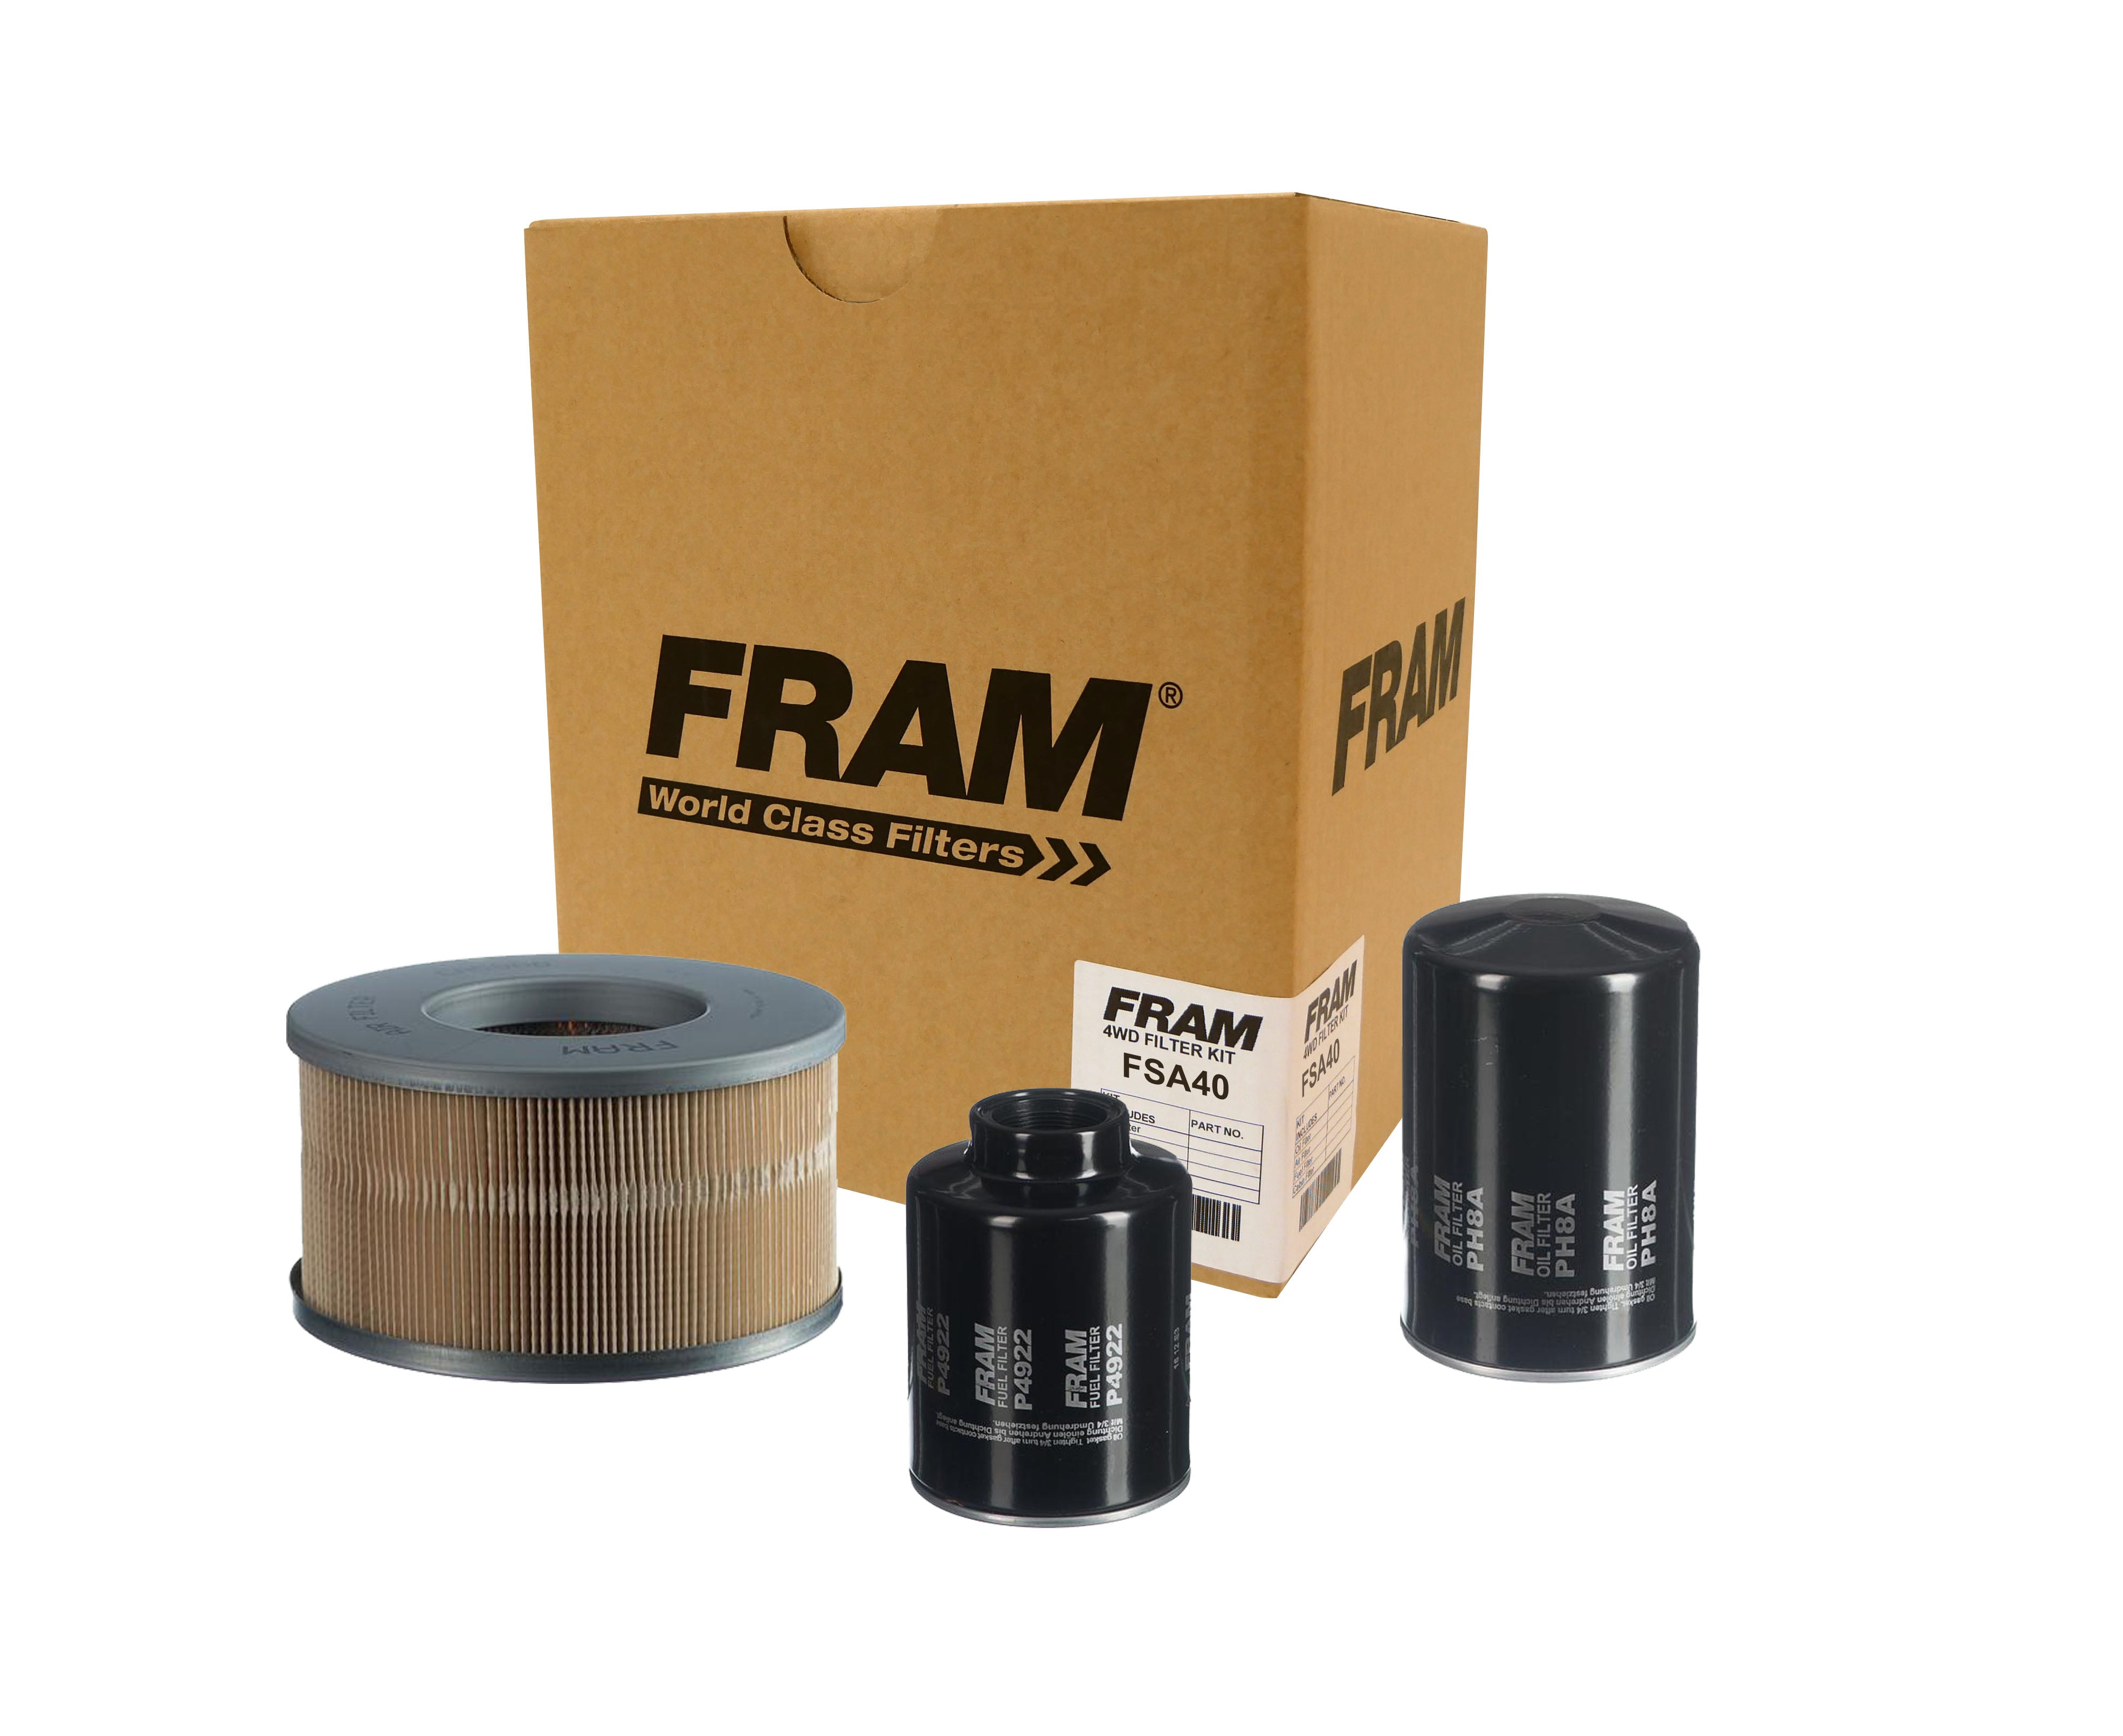 FRAM 4wd Filter Kit for Toyota Hilux LN167 & 172 10/97-../00 | FRAM